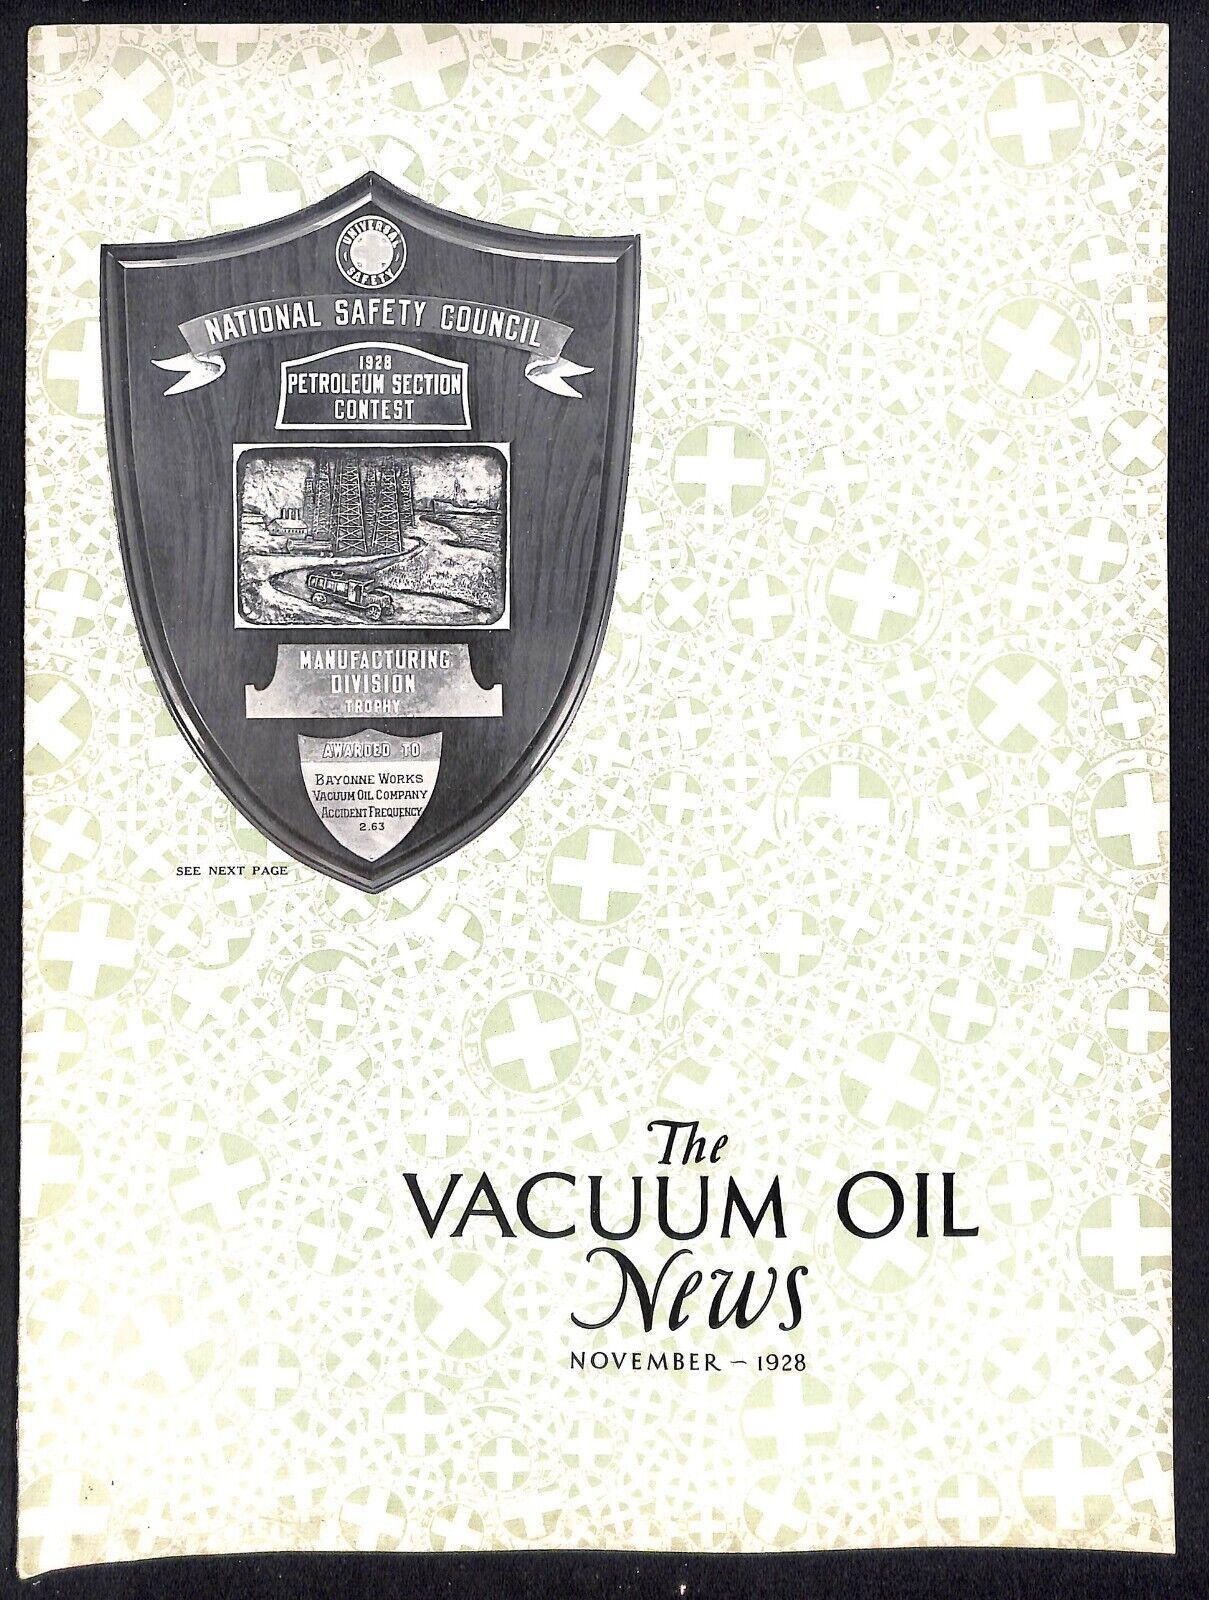 Vacuum Oil News Mobiloil Mobil Oil Gargoyle November 1928 16pp. Scarce VGC